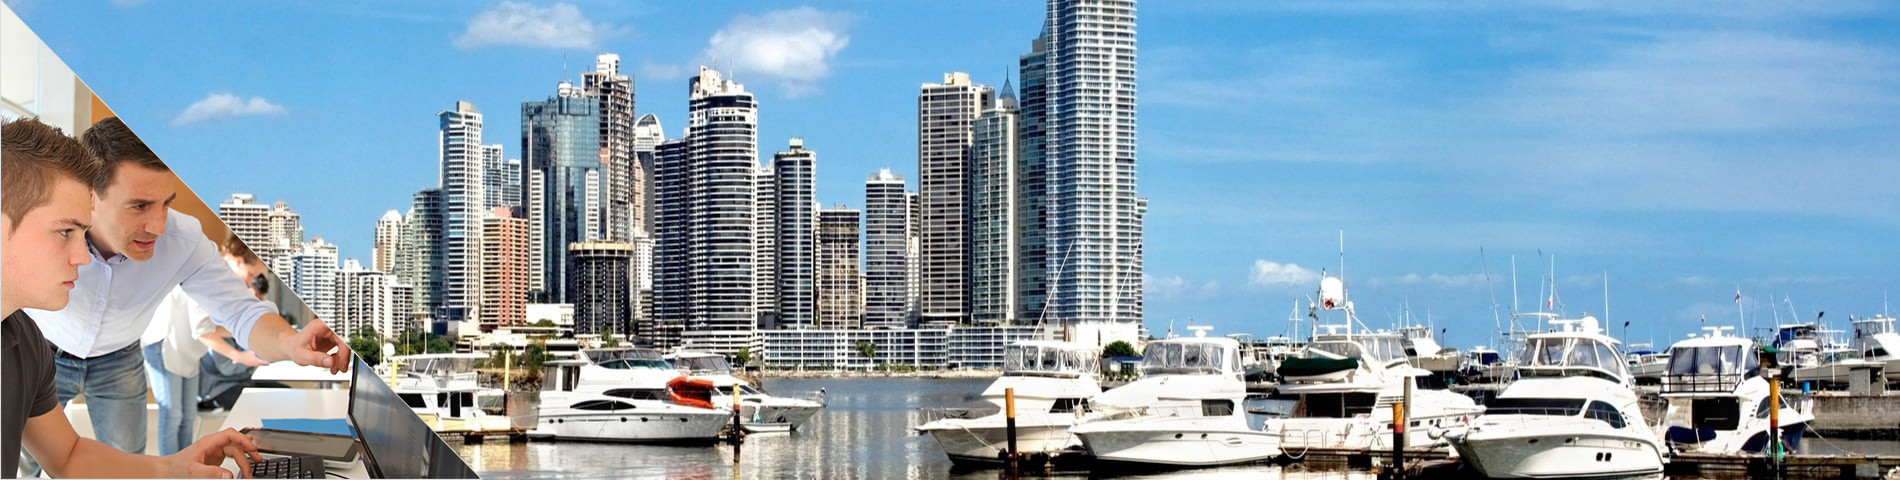 Panama City - Praktikprogram